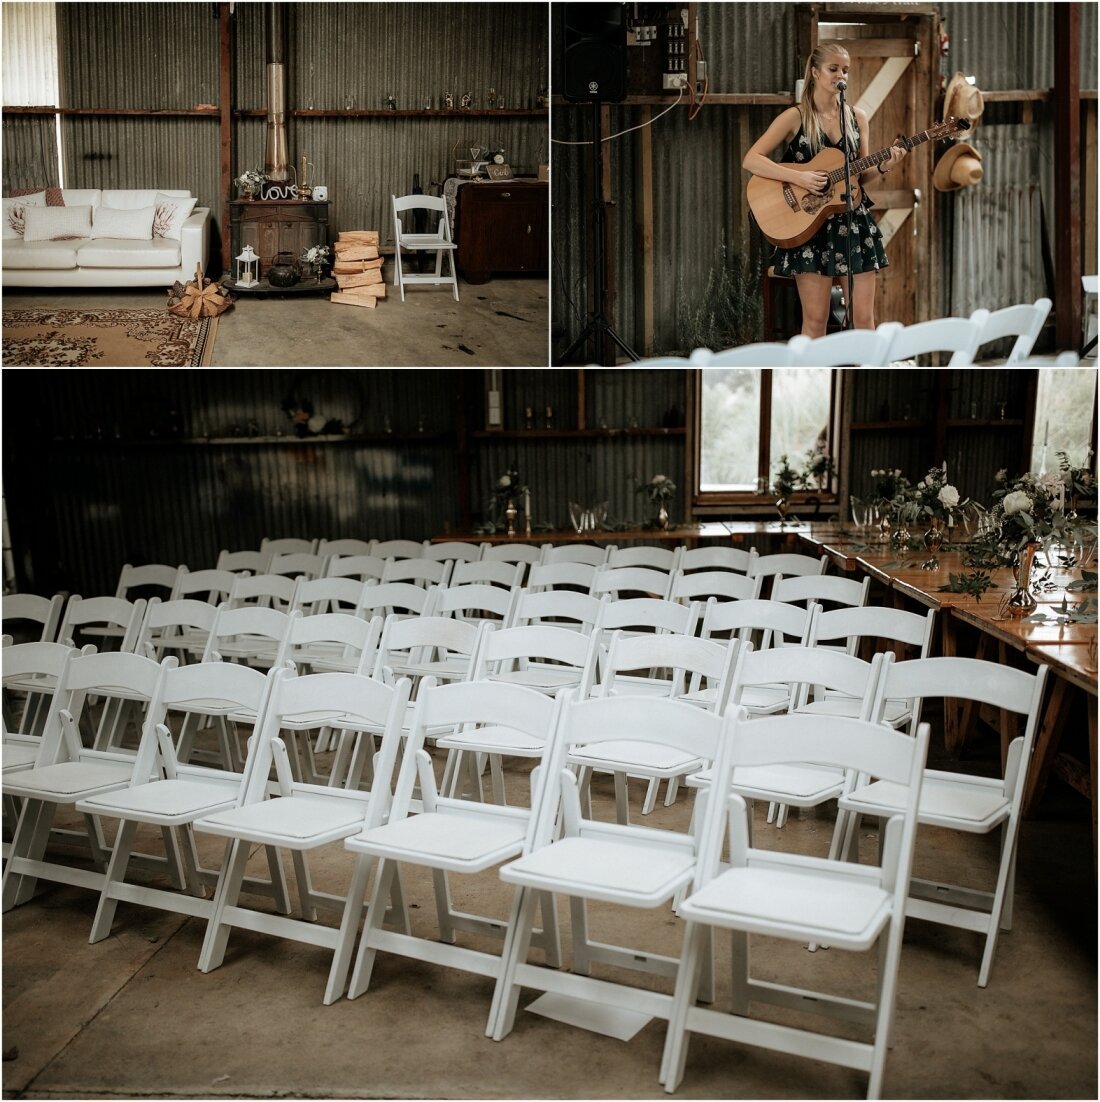 Zanda+Auckland+wedding+photographer+boho+vintage+lace+retro+The+barn+Waimauku+venue+New+Zealand_33.jpeg